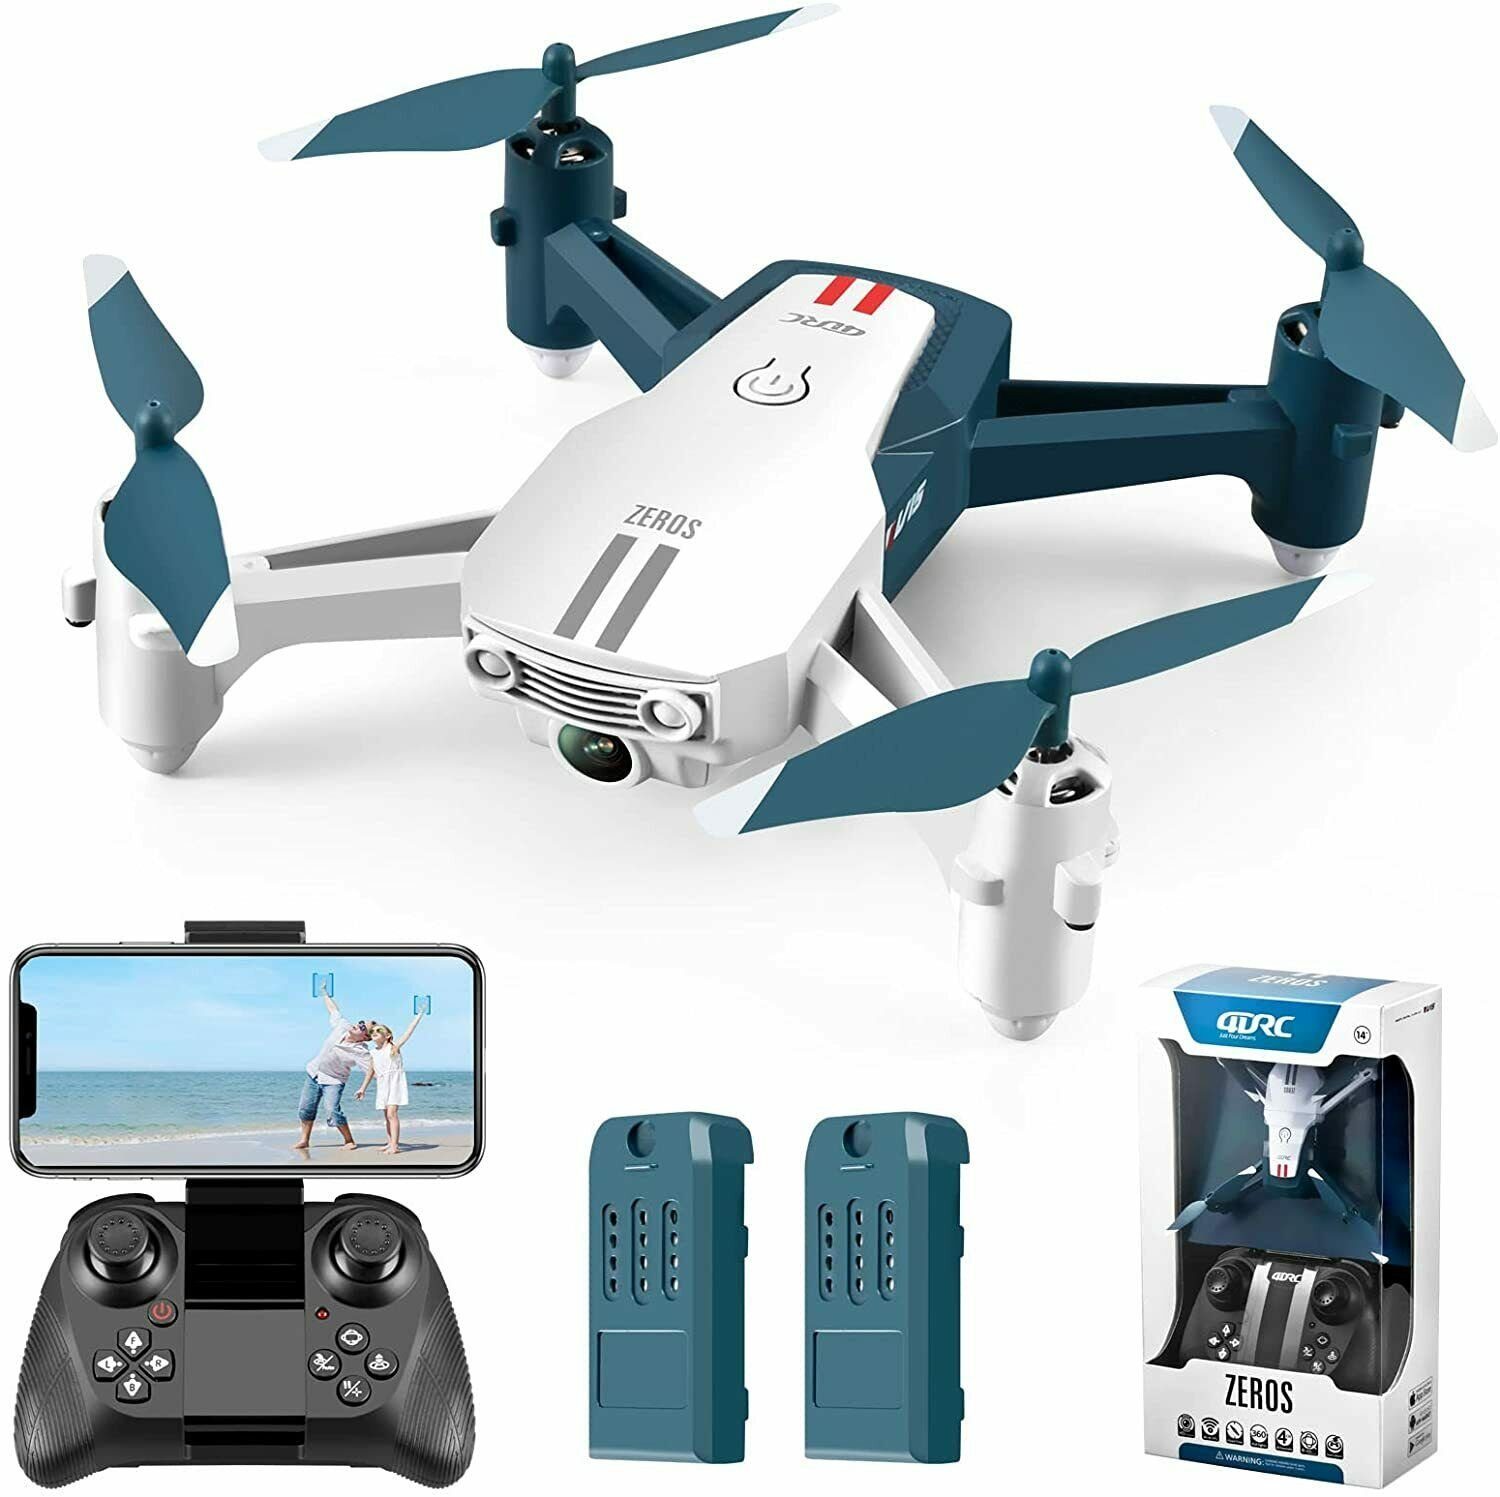 4DRC für Kinder & Anfänger, klappbarer Quadcopter Spielzeug-Drohne (1080P HD, FPV-Live-Video, automatischer Schwebeflug) Blau